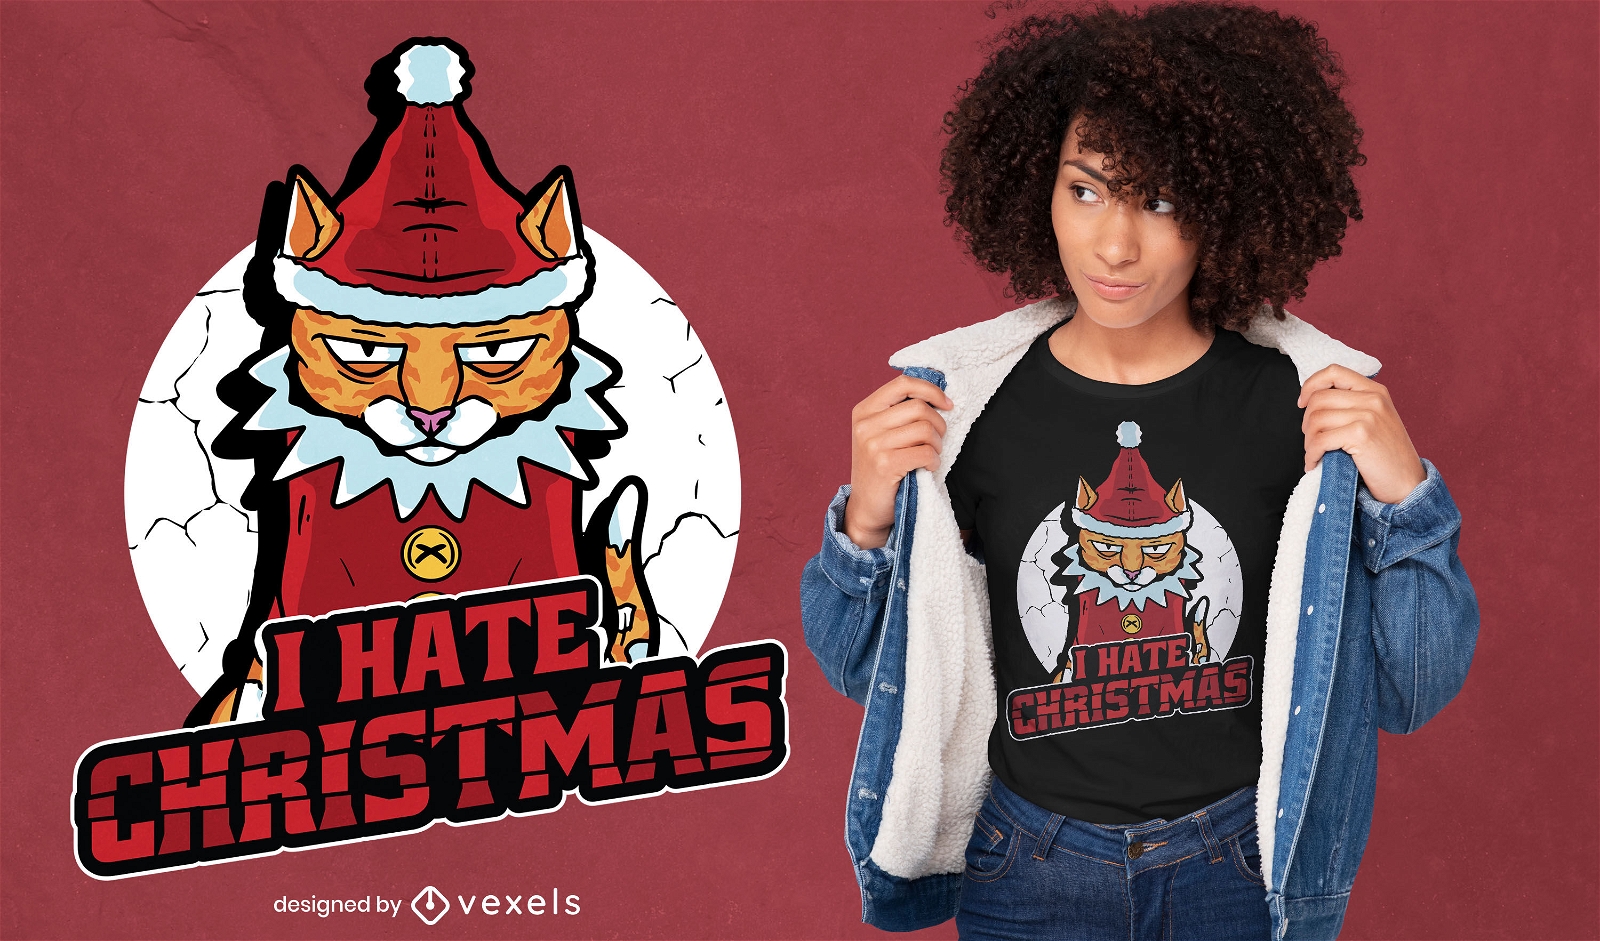 Genial dise?o de camiseta de gato anti-navide?o.